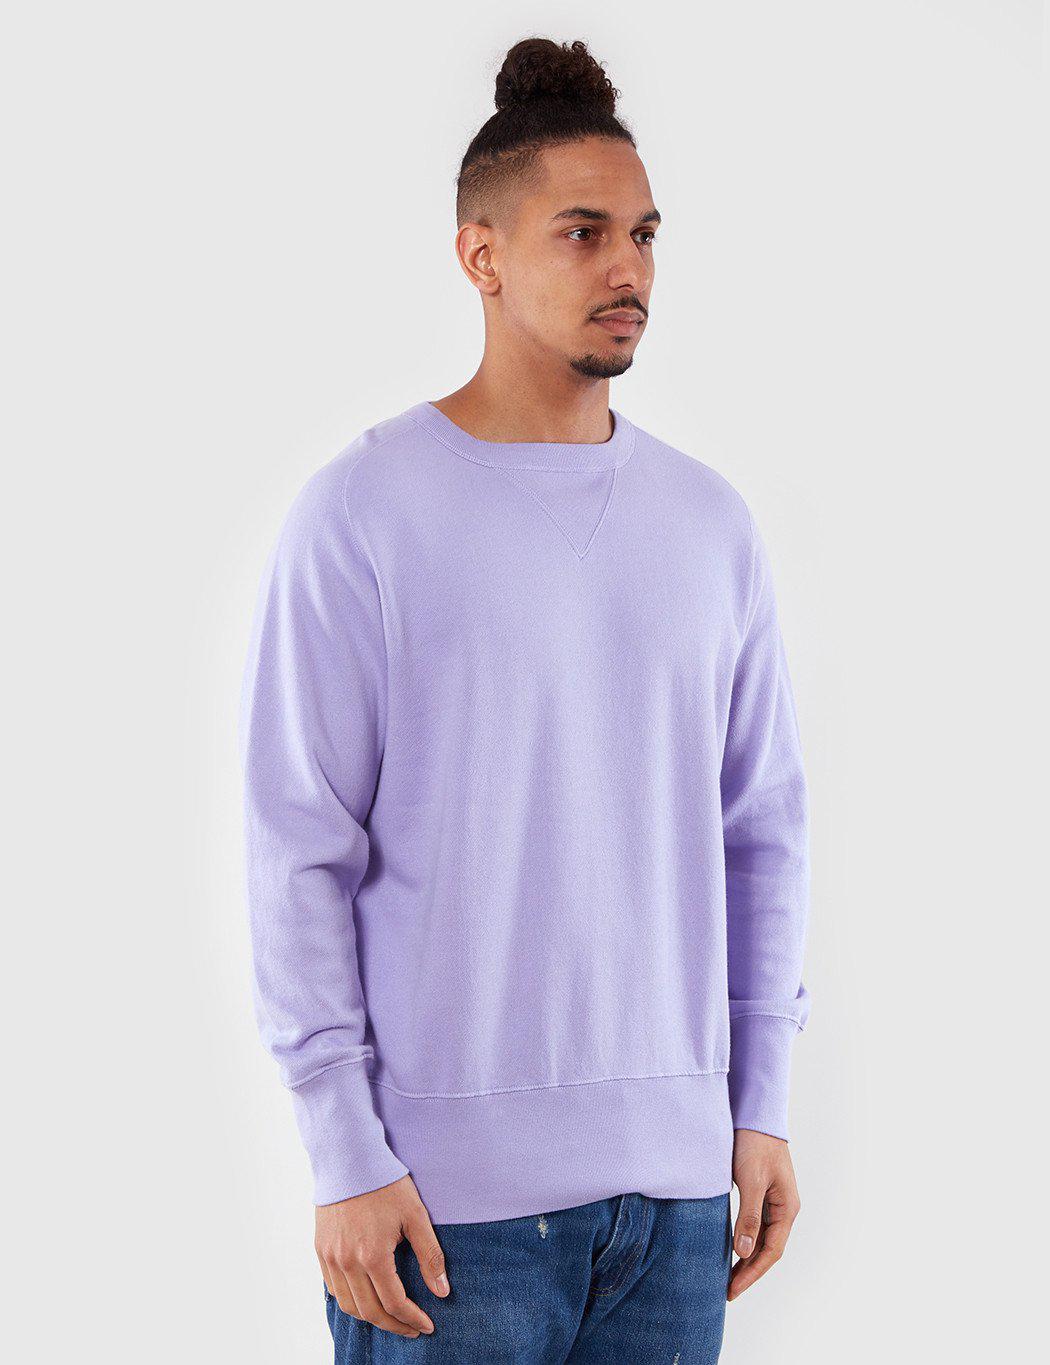 Levi's Bay Meadows Sweatshirt in Purple for Men - Lyst